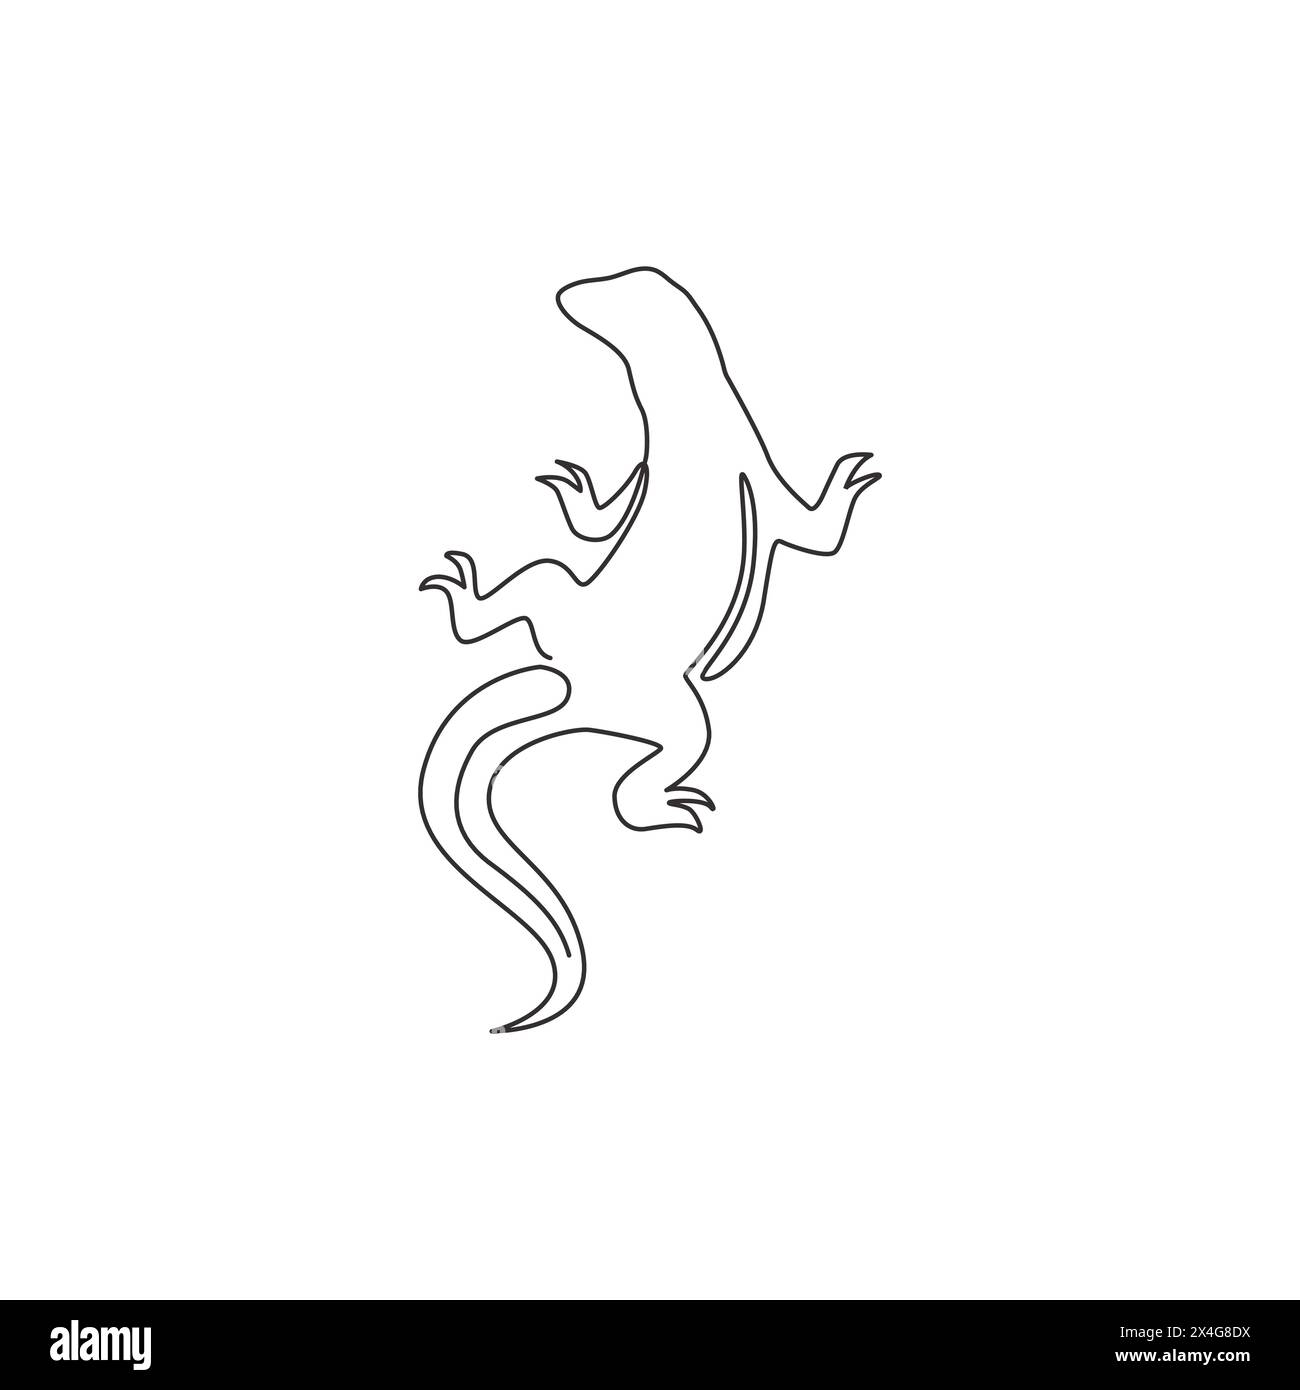 Un disegno a linea singola del forte drago di komodo per l'identità del logo aziendale. Pericoloso concetto di mascotte animale predatore per lo zoo dei rettili. Continuo alla moda Illustrazione Vettoriale